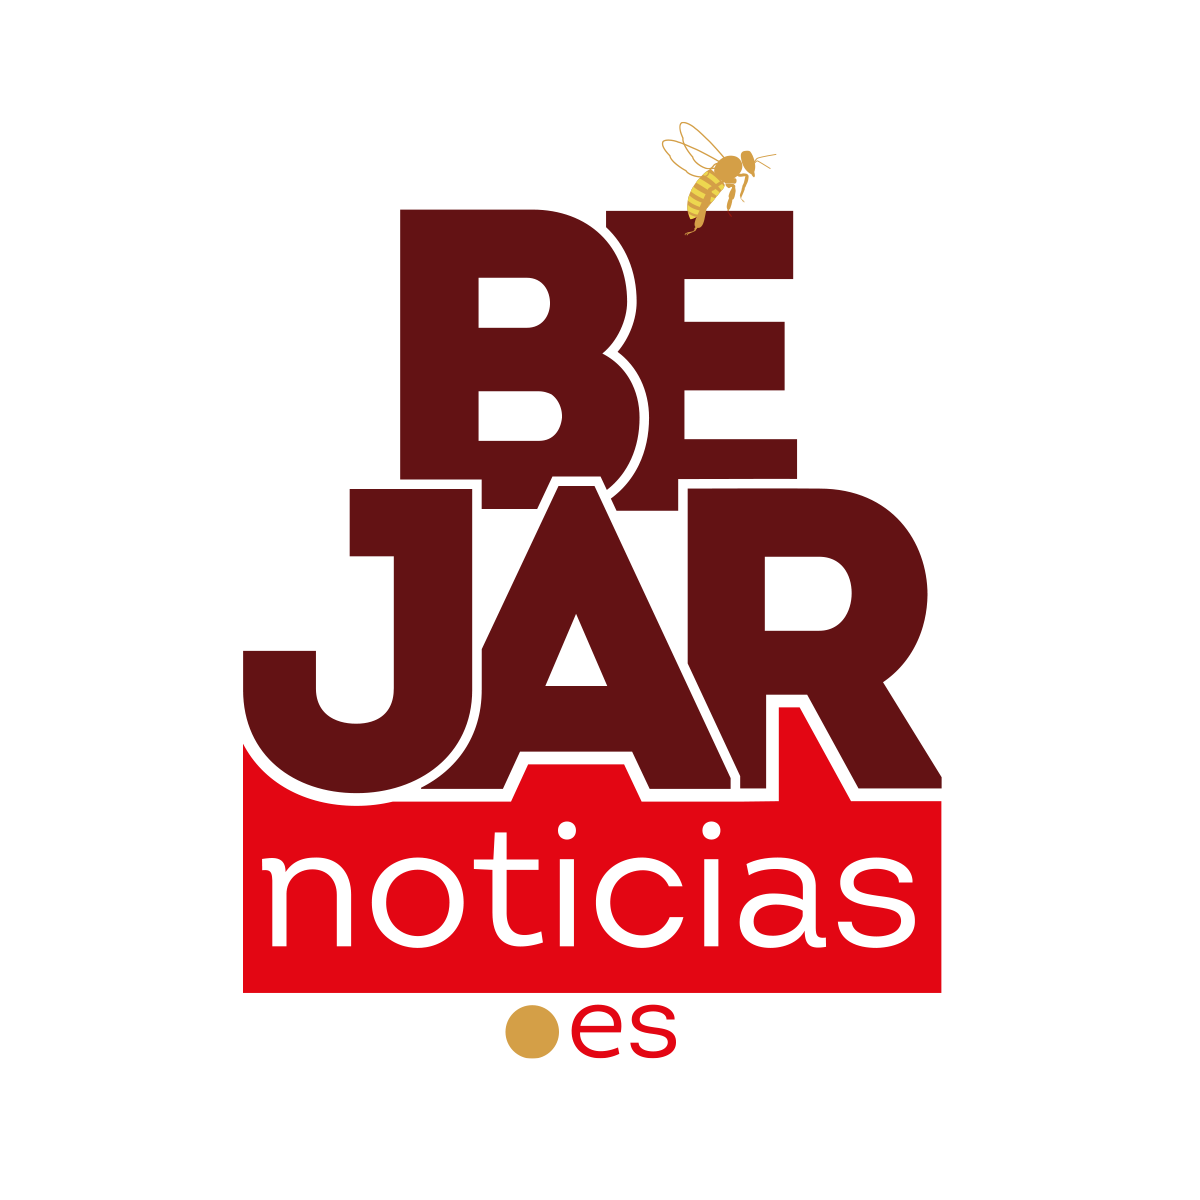 (c) Bejarnoticias.es